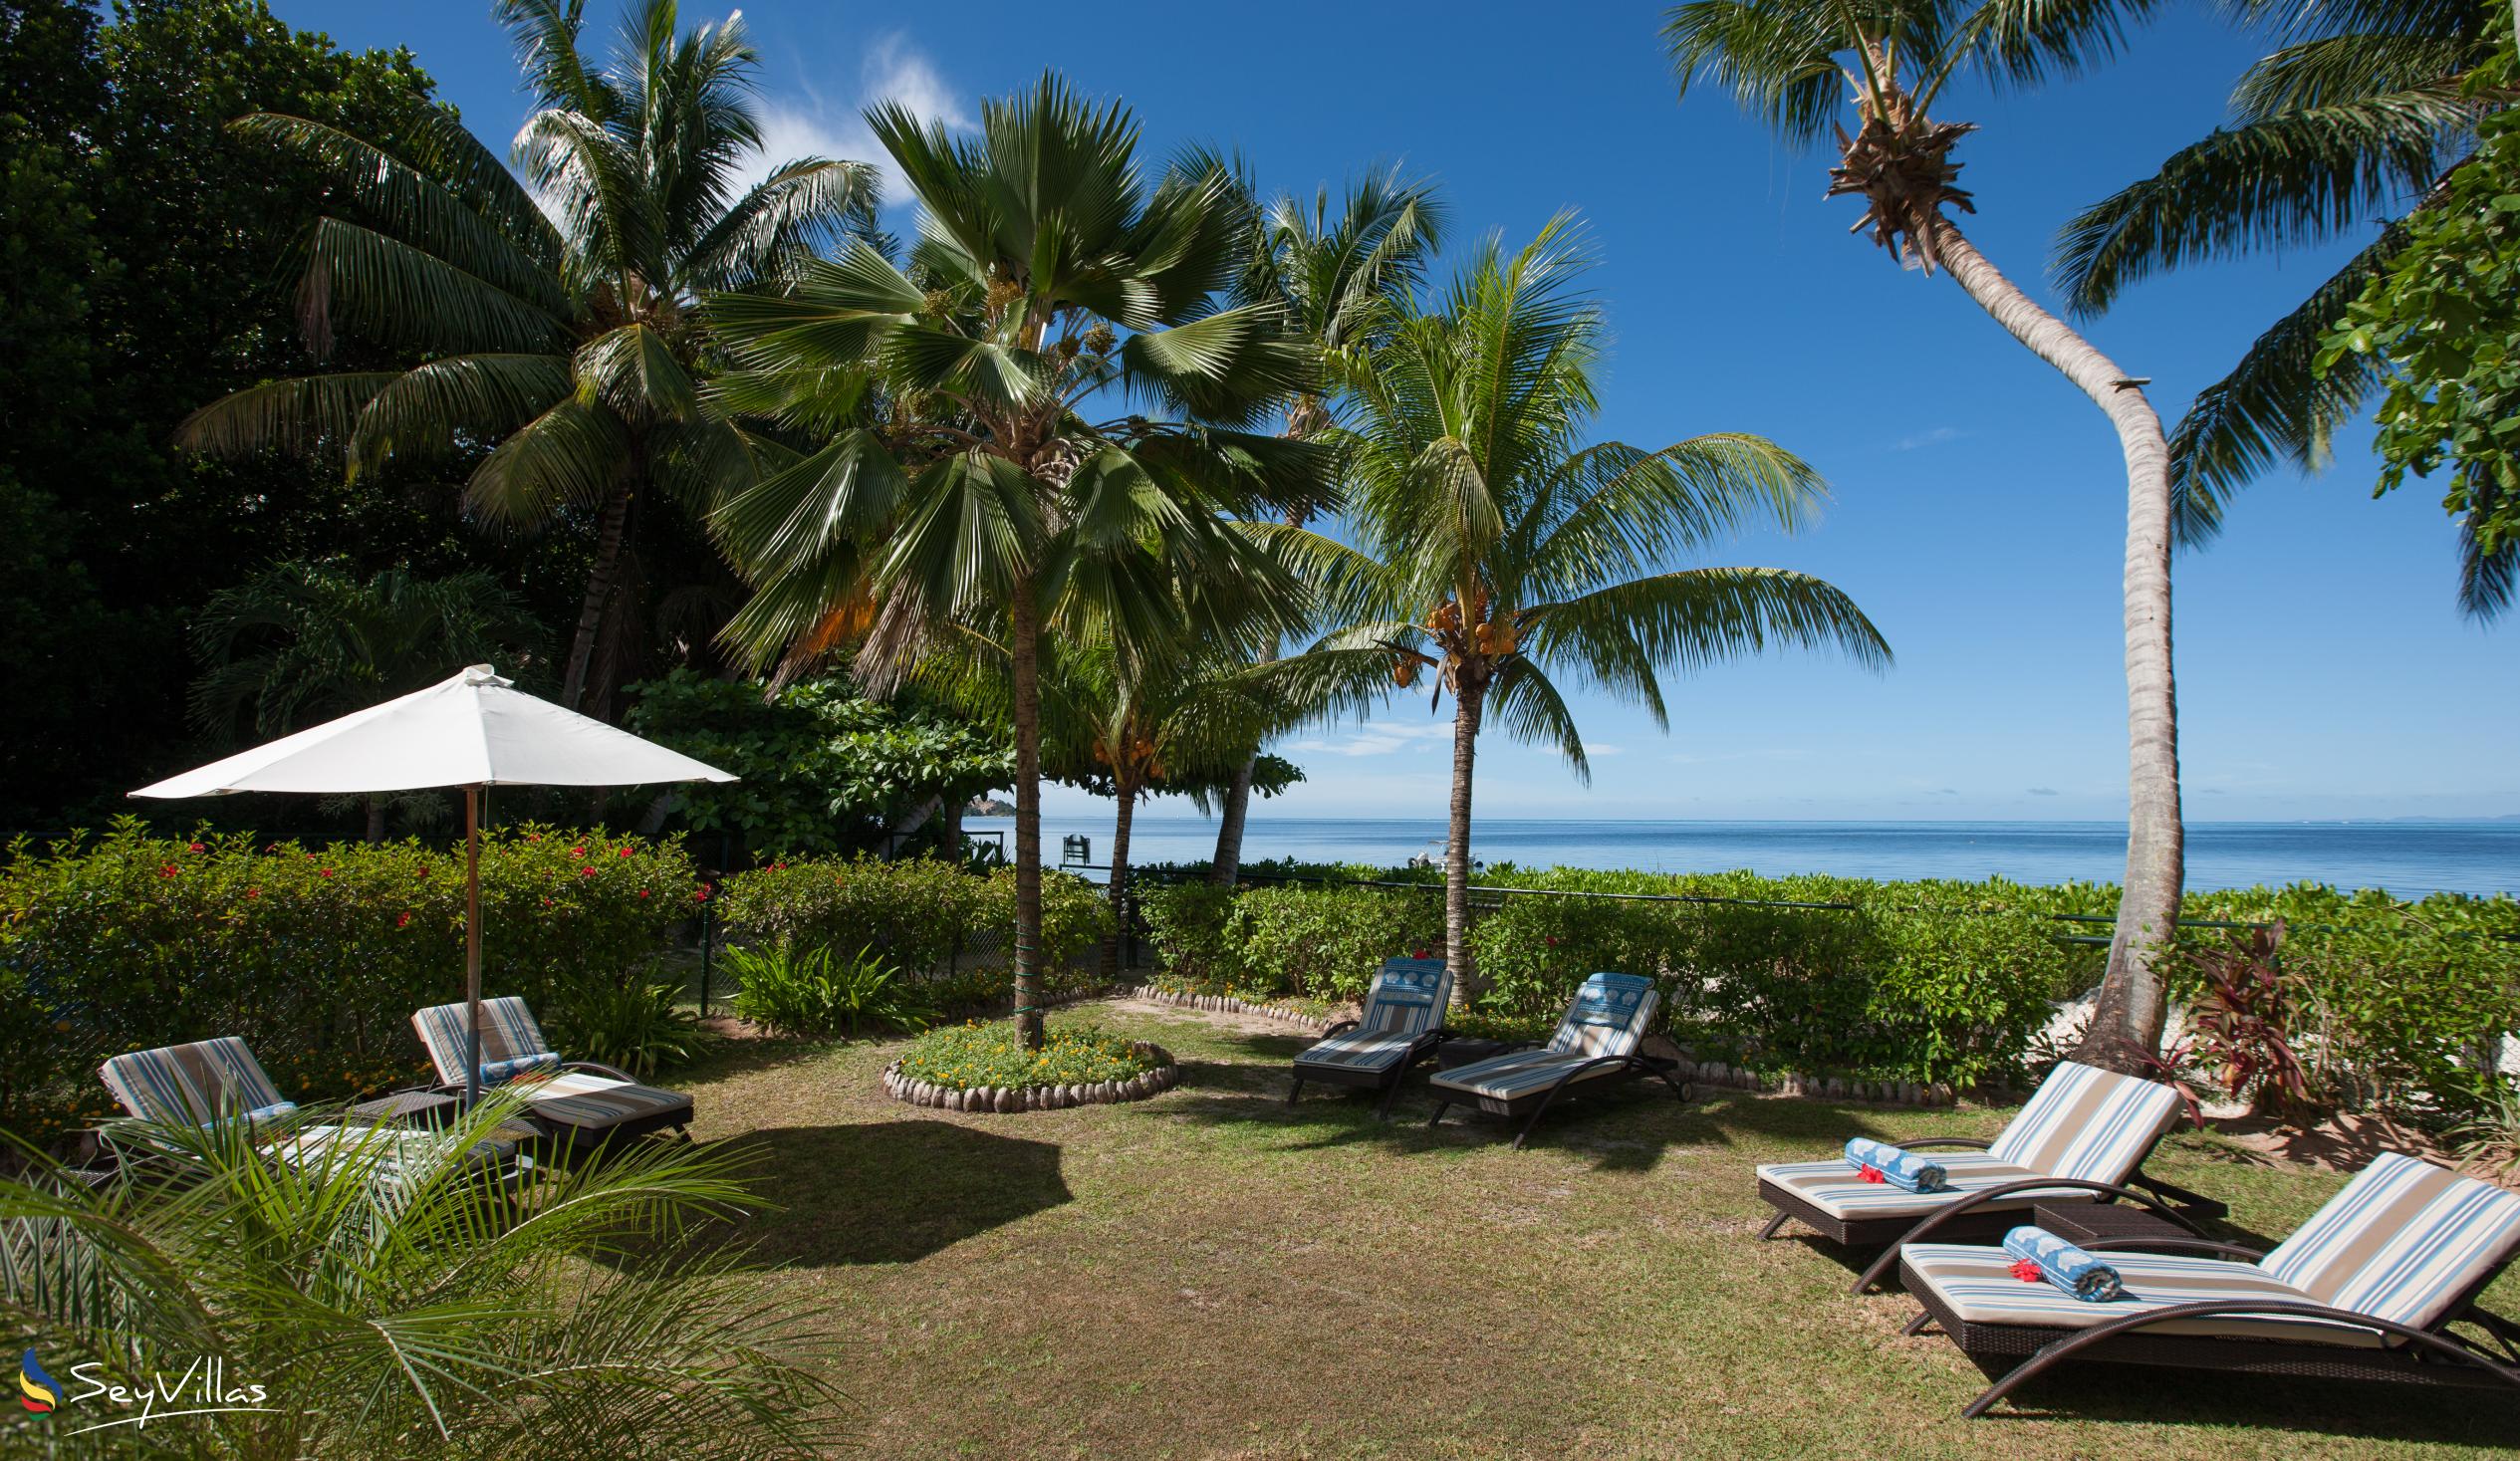 Foto 31: Ocean Villa - Aussenbereich - Praslin (Seychellen)